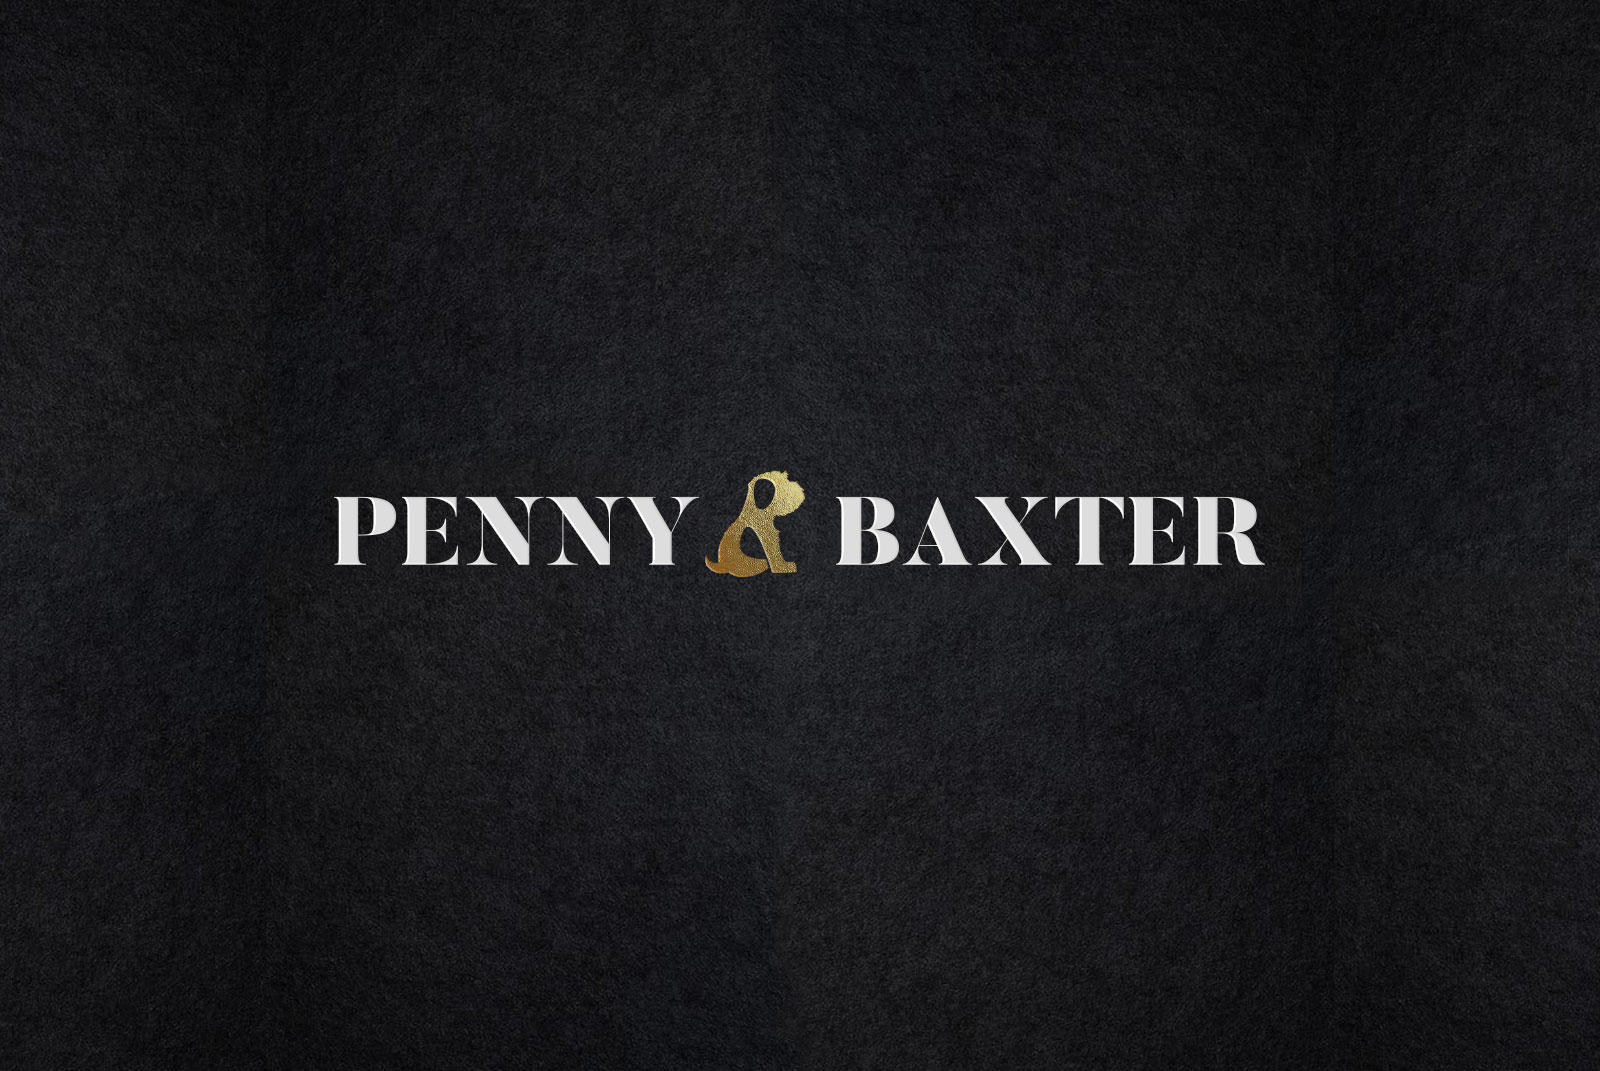 Penny and Baxter - Branding + Web - Dosmaquinas: Design Studio